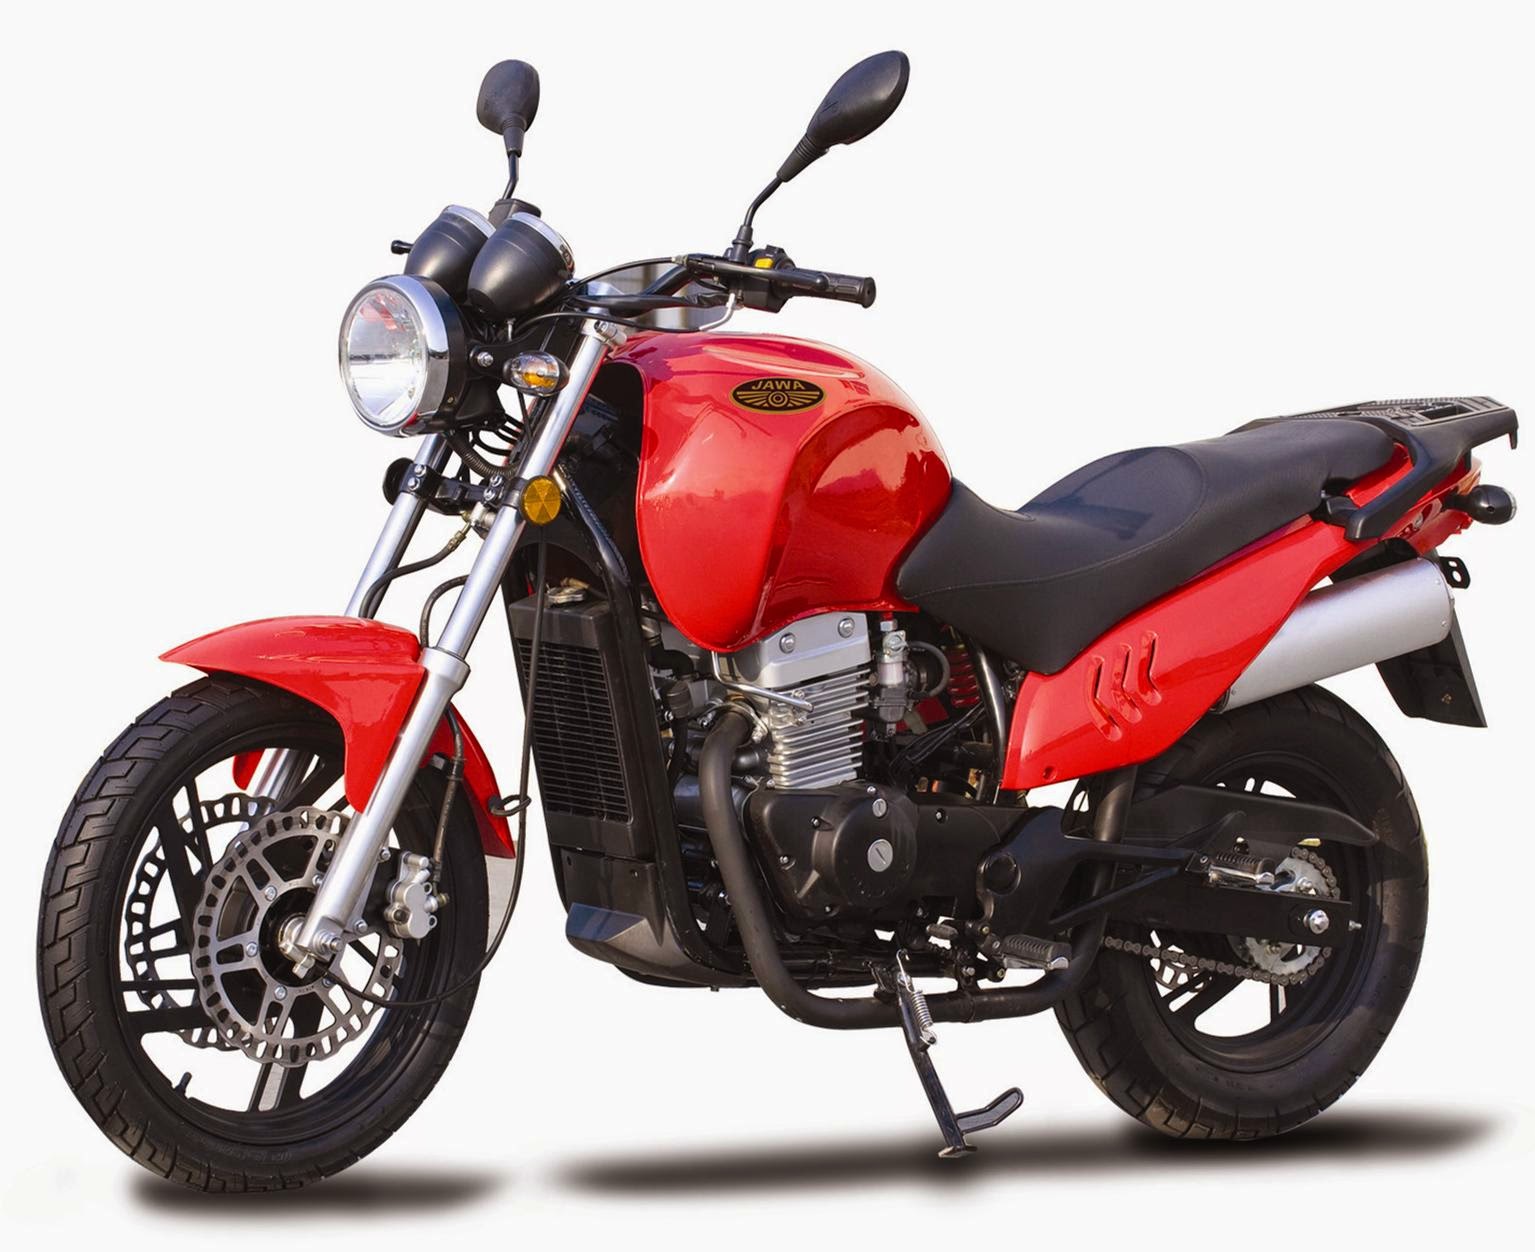 Мотоцикл ява цена новый с завода. Новая Ява мотоцикл 2020. Мотоцикл новый Ява 600. Мотоцикл Ява 2021. Мотоцикл Ява 2017.